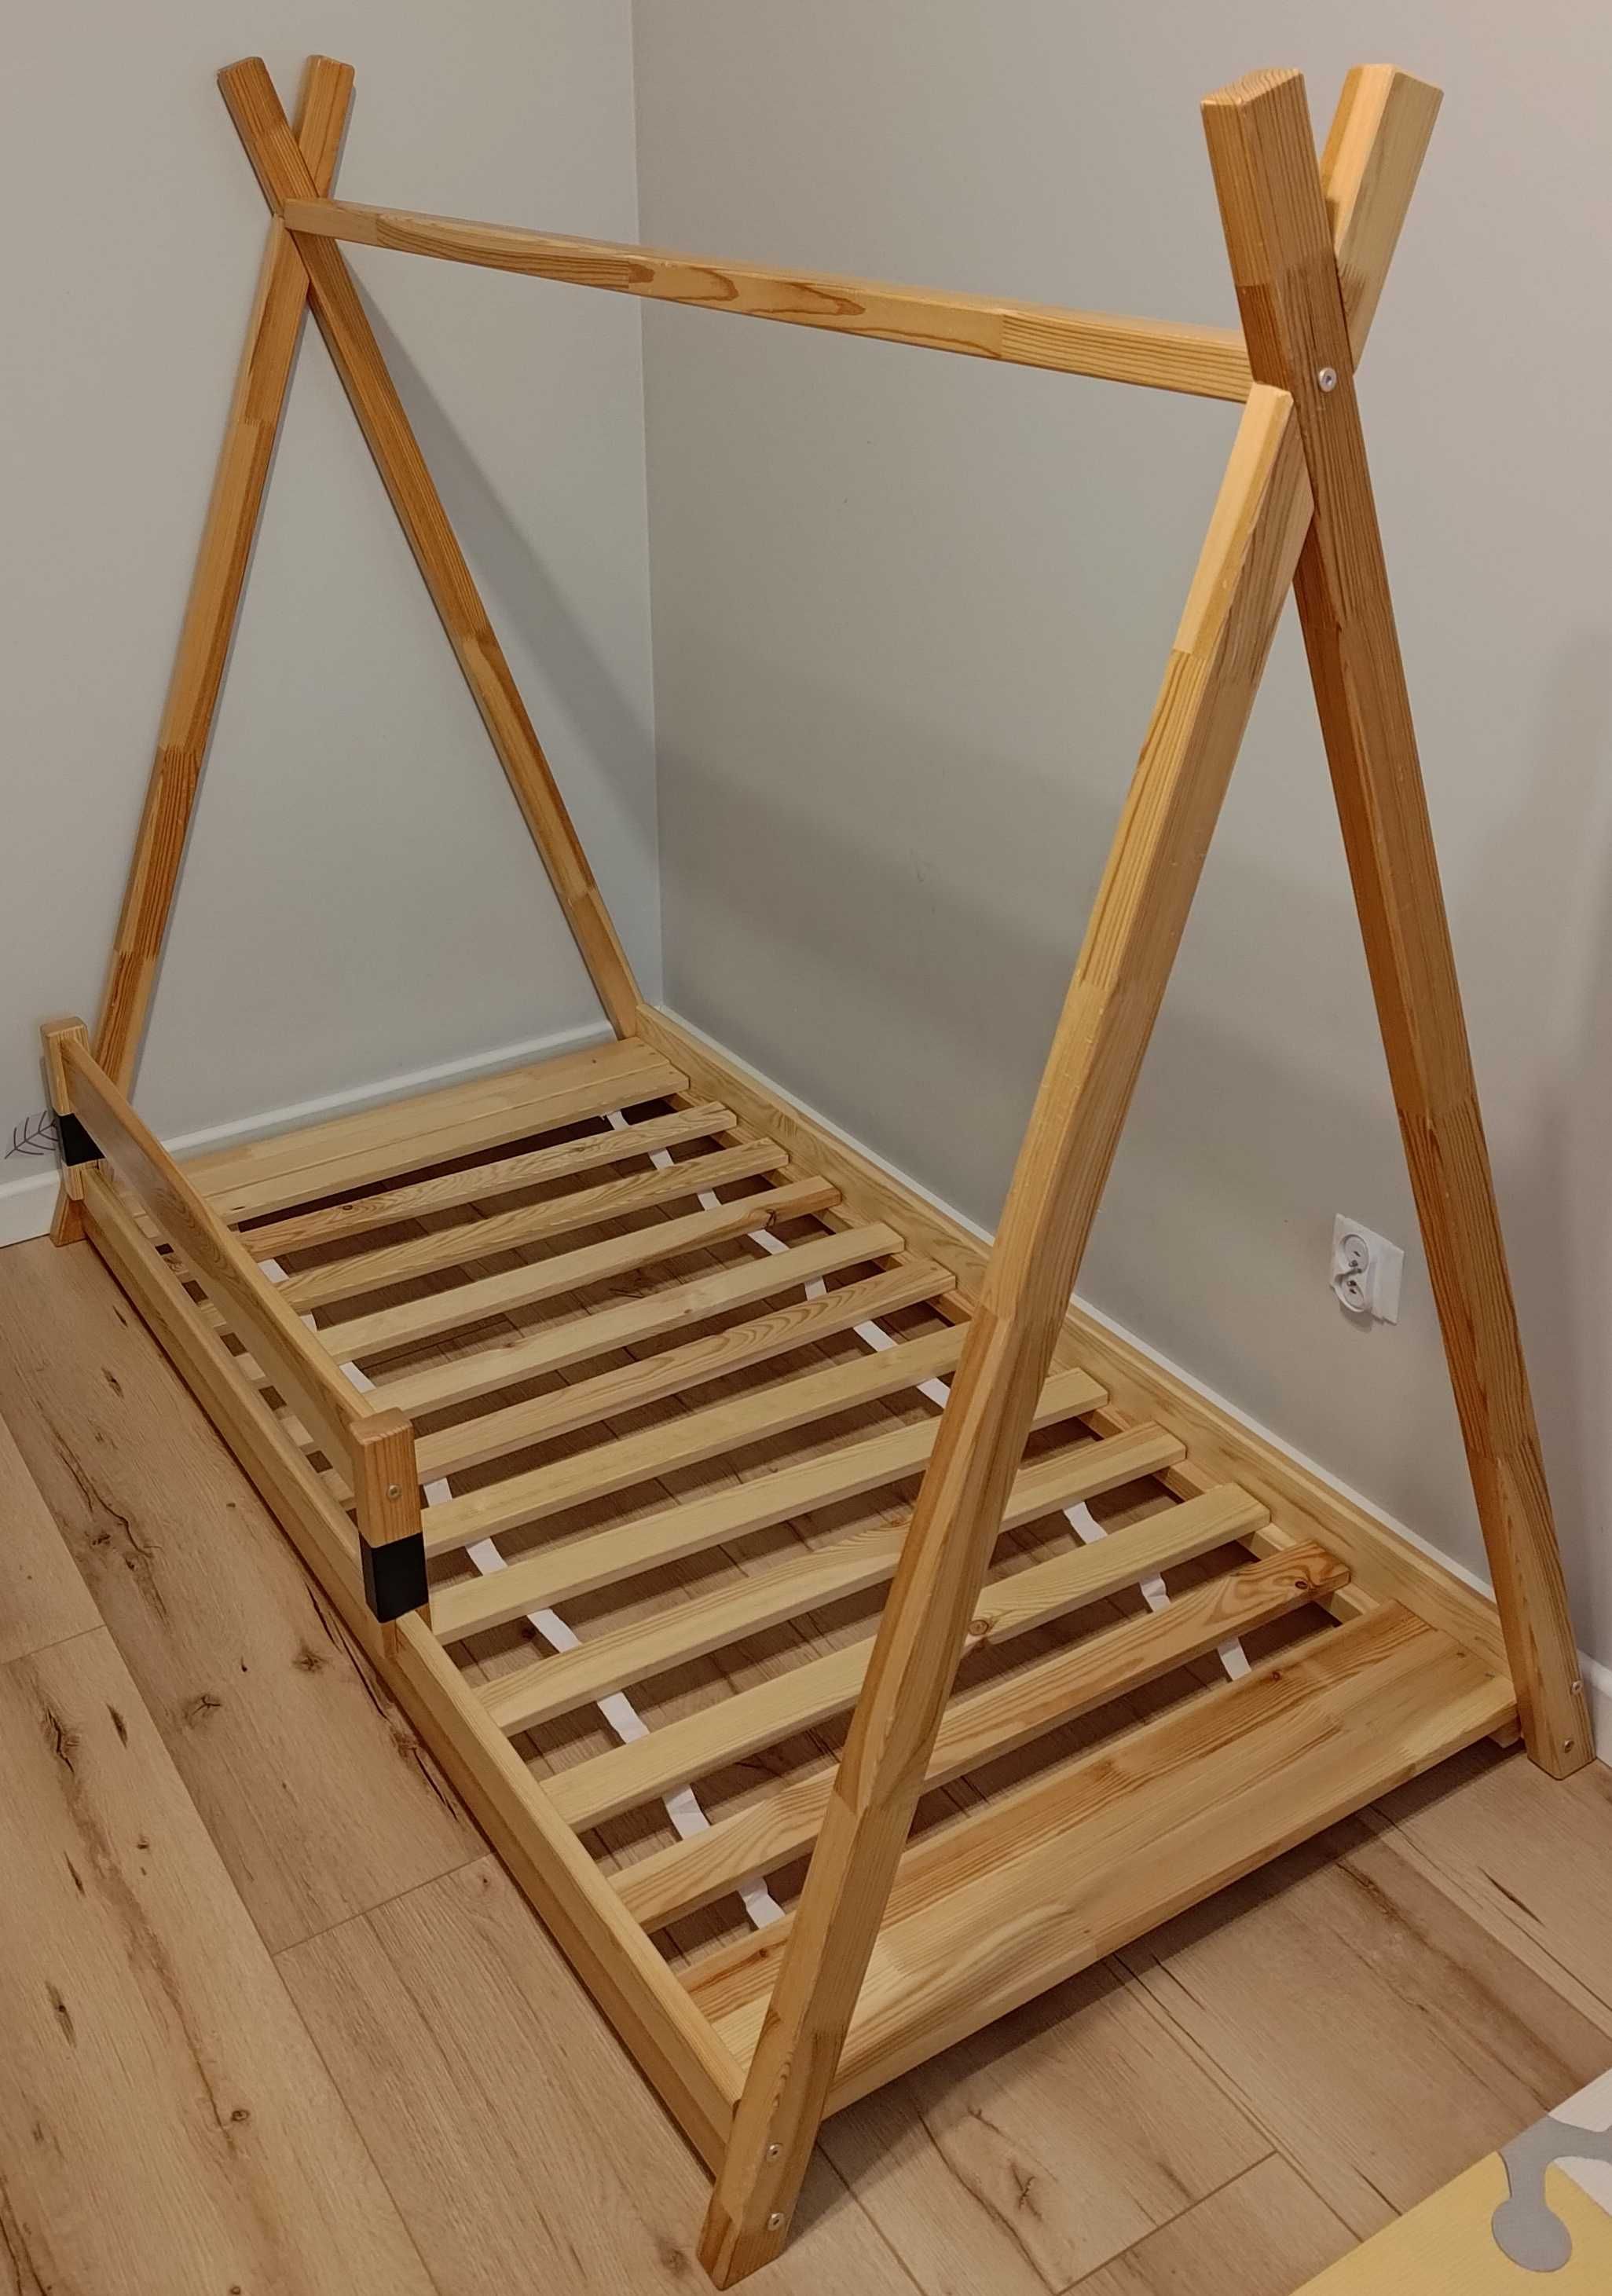 Drewniane łóżko TIPI dla dziecka firmy YOUKO